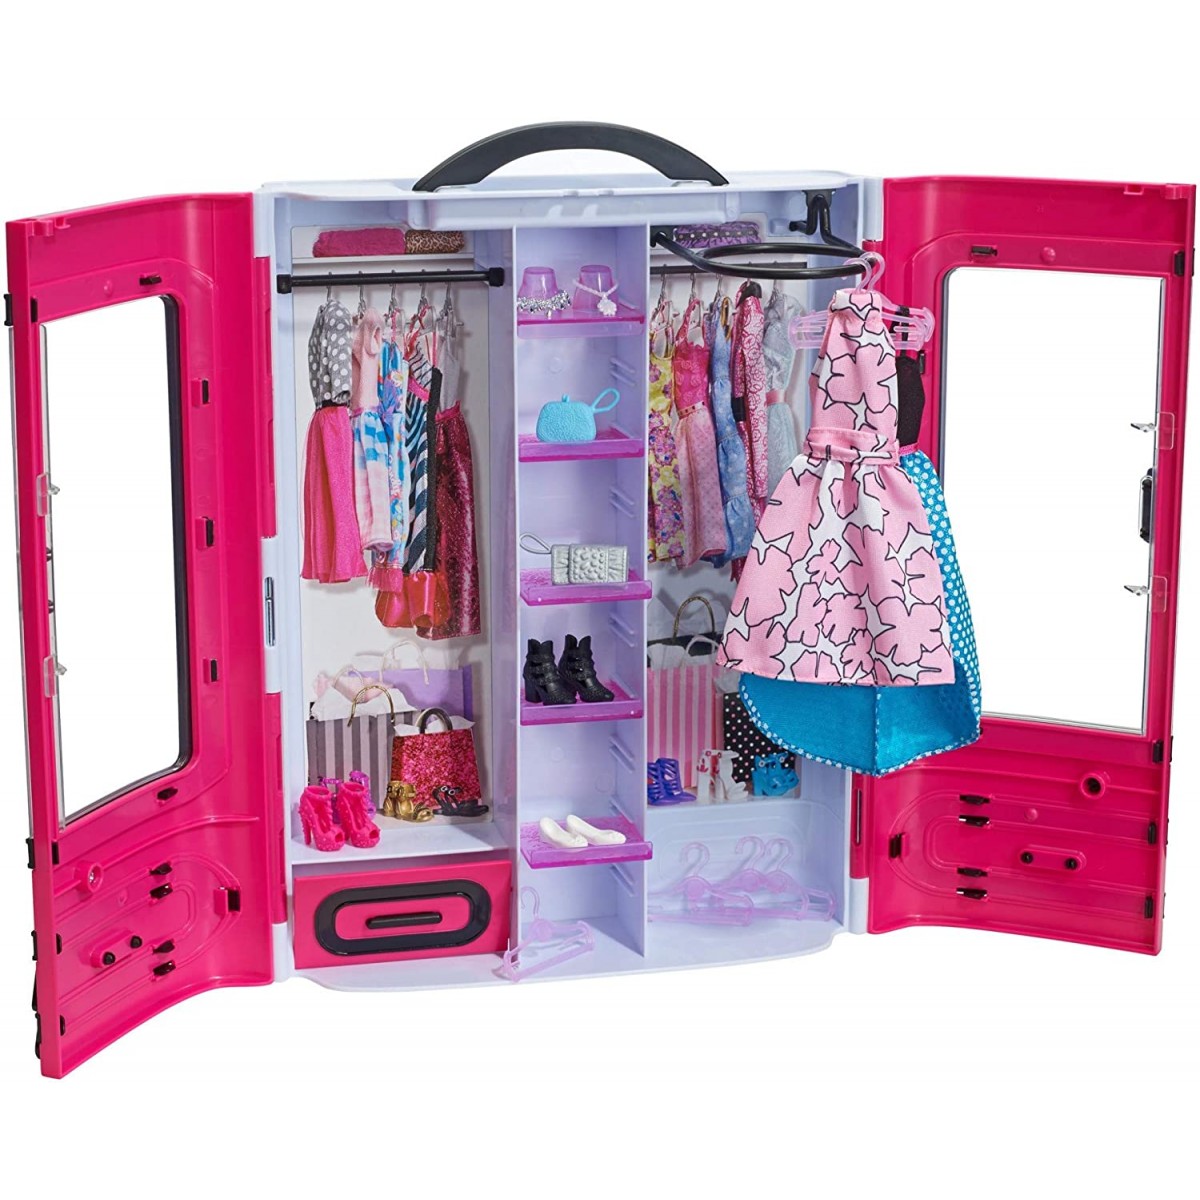 Barbie completo ha un aspetto-Mattel-Scegli il vestito che desideri-Nuovo di Zecca 